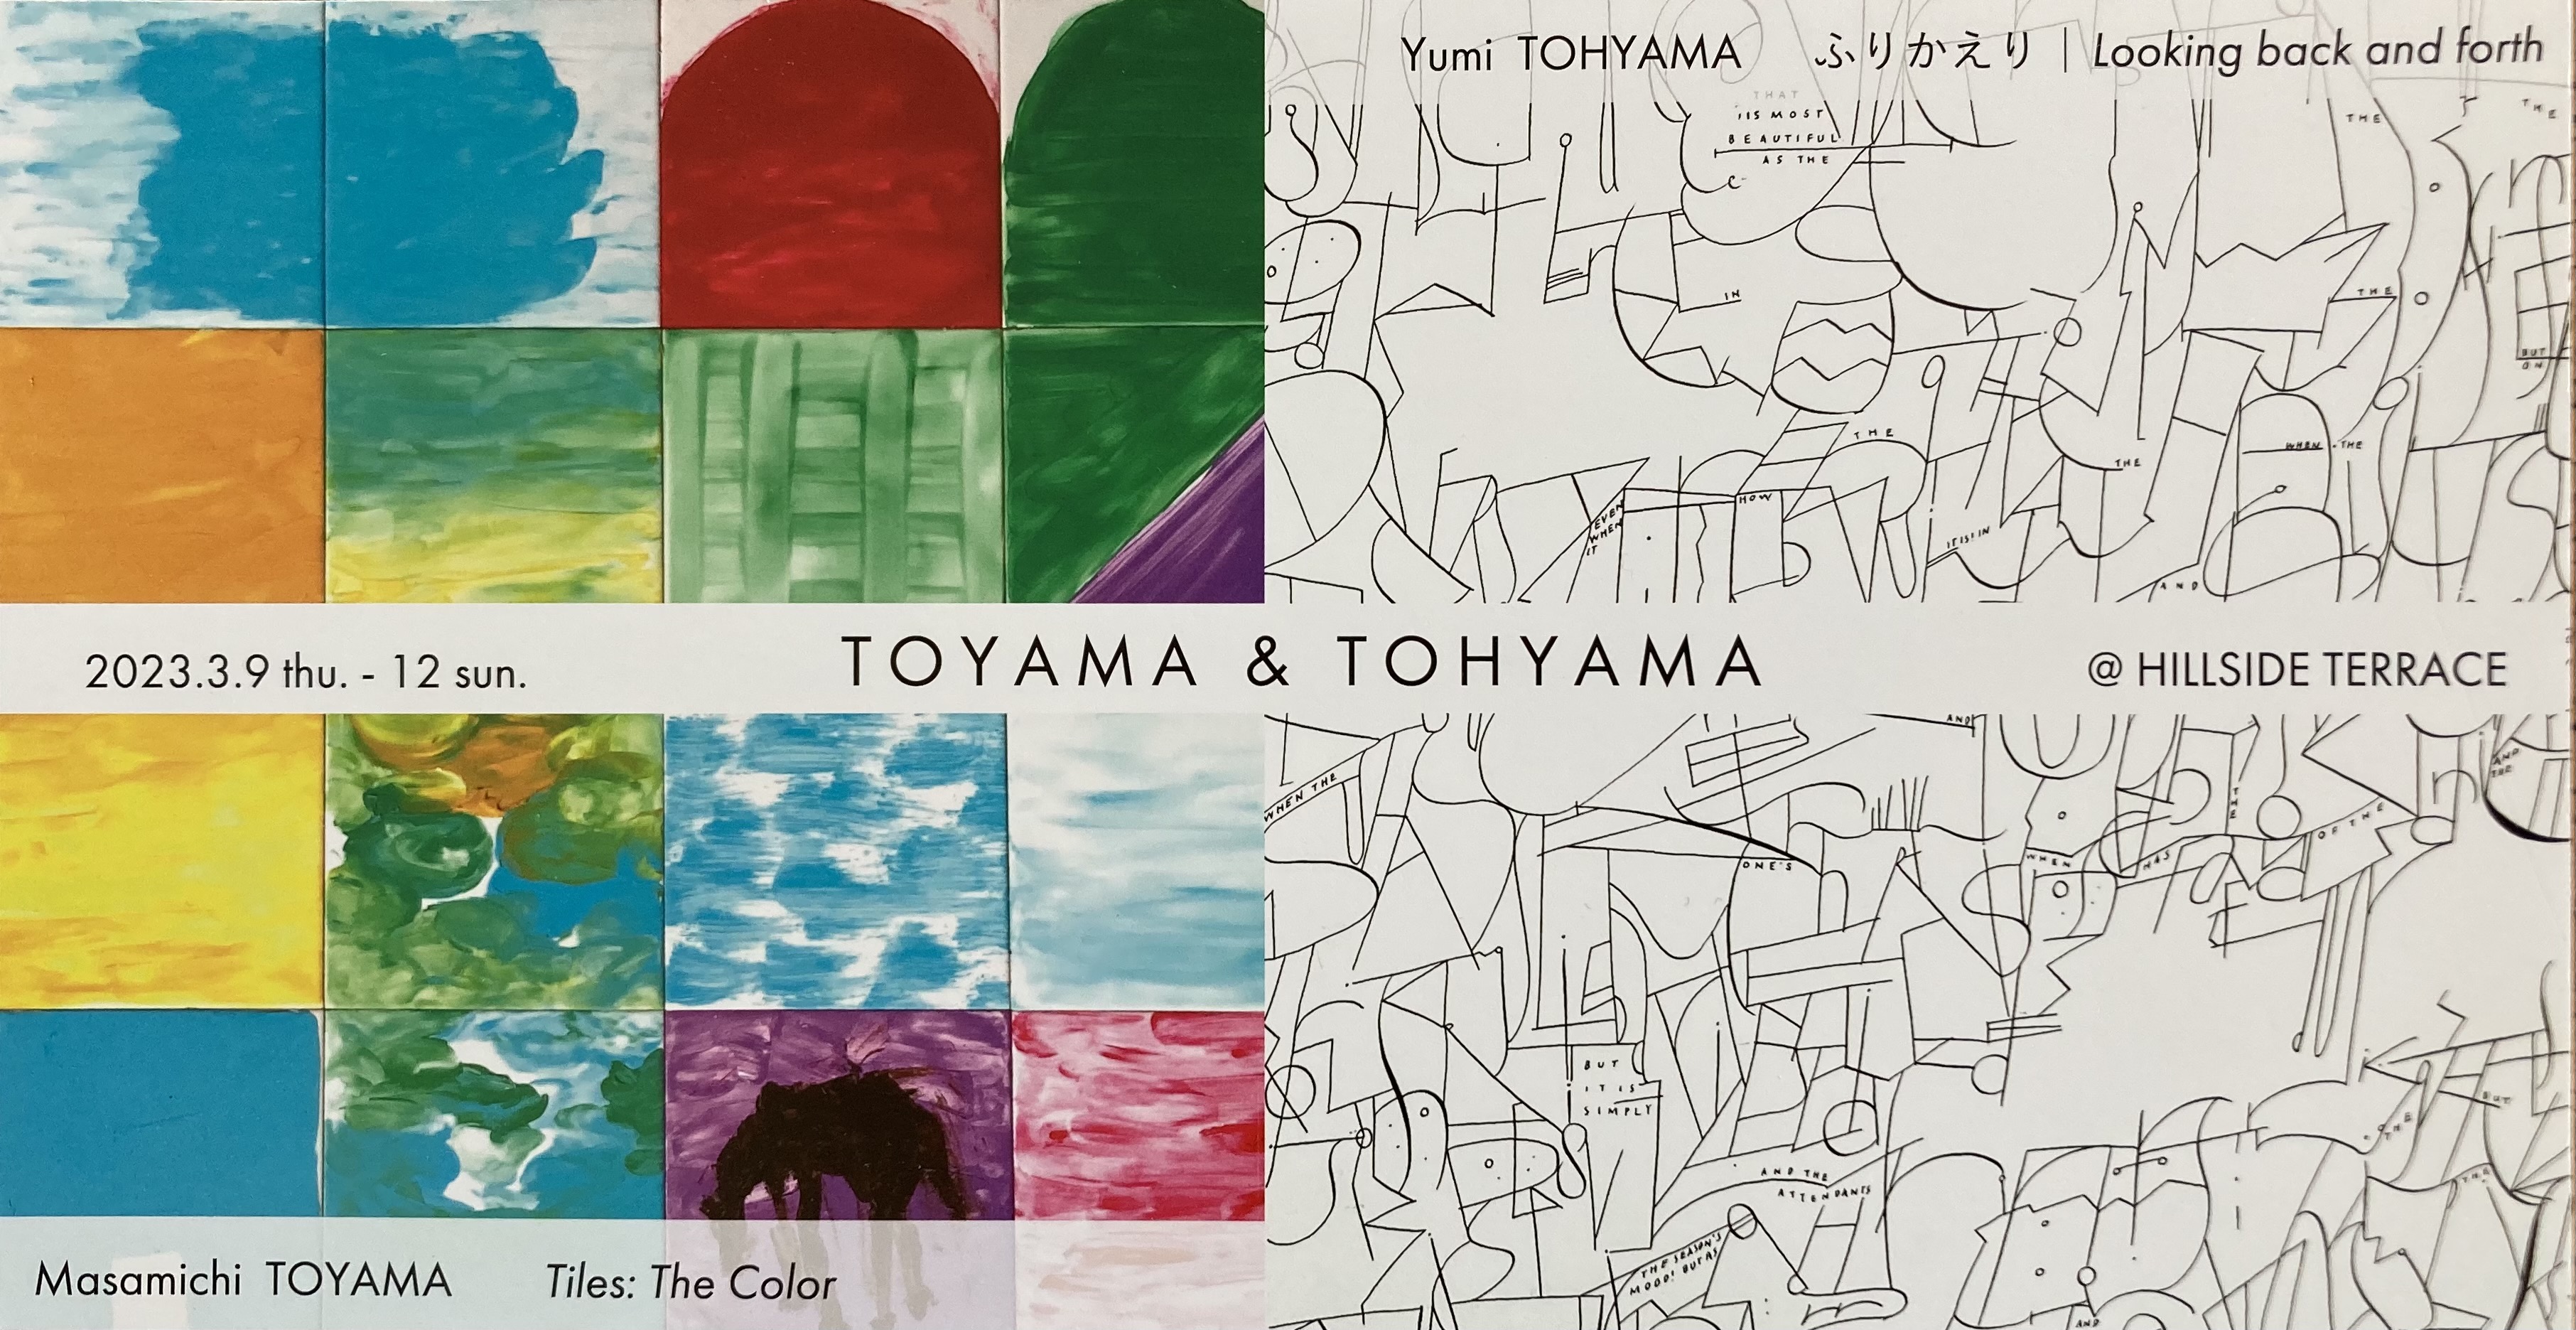 Toyama & Tohyama 